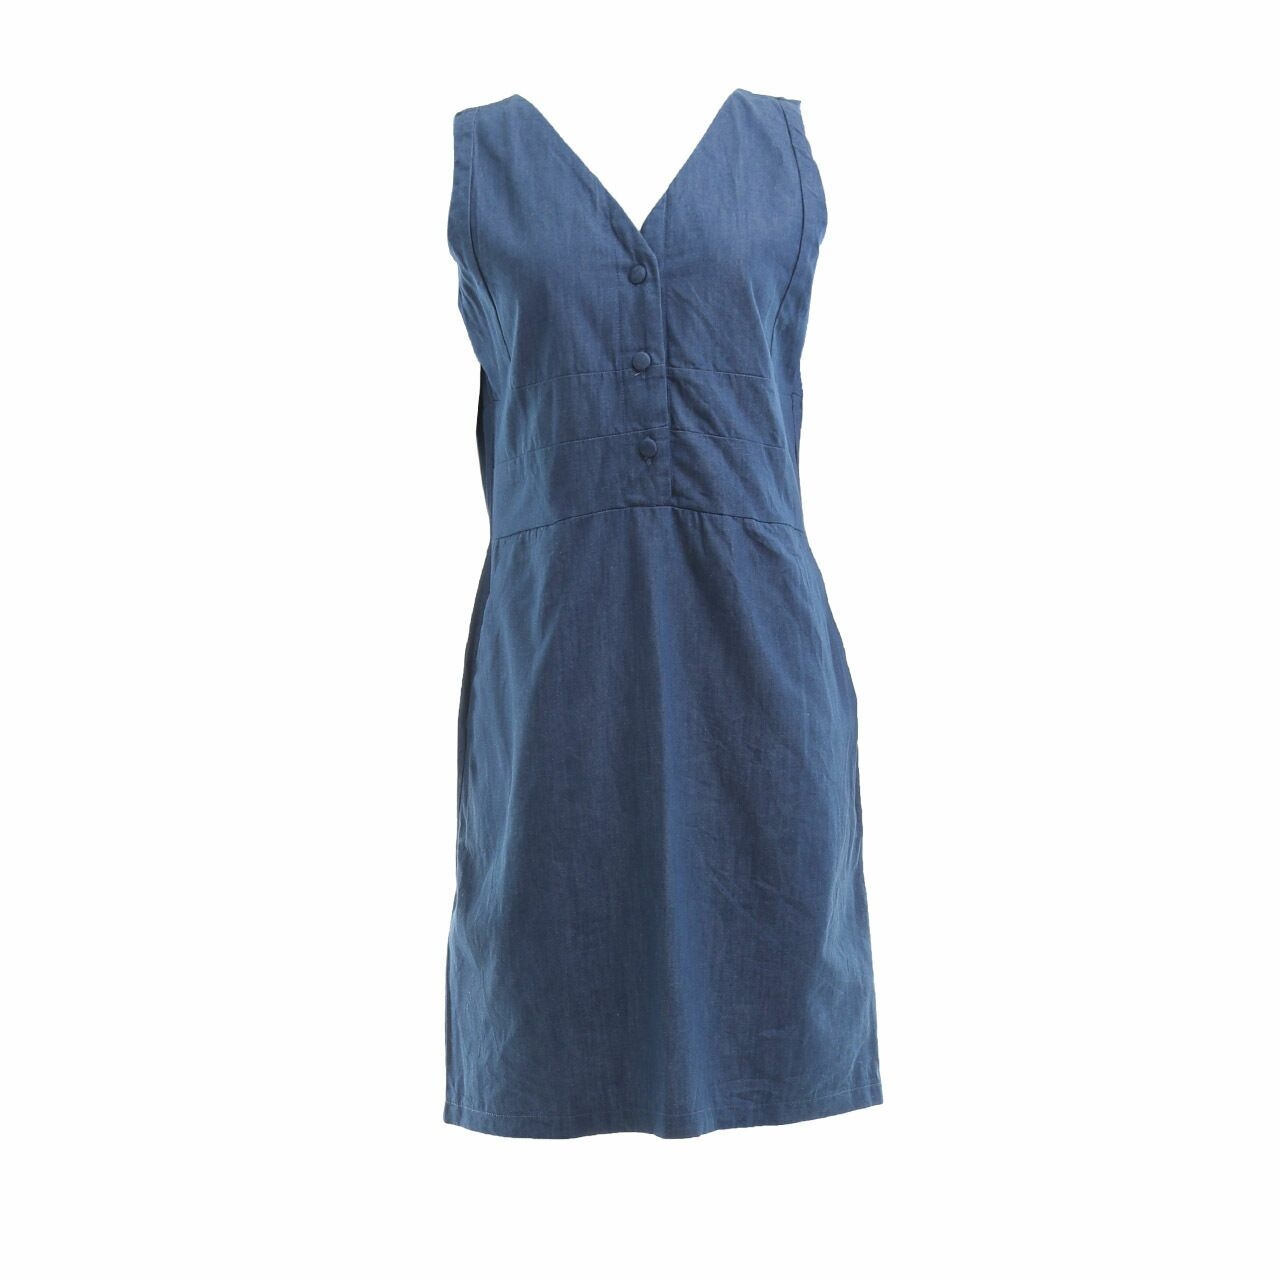 Schoncouture Dark Blue Denim Mini Dress